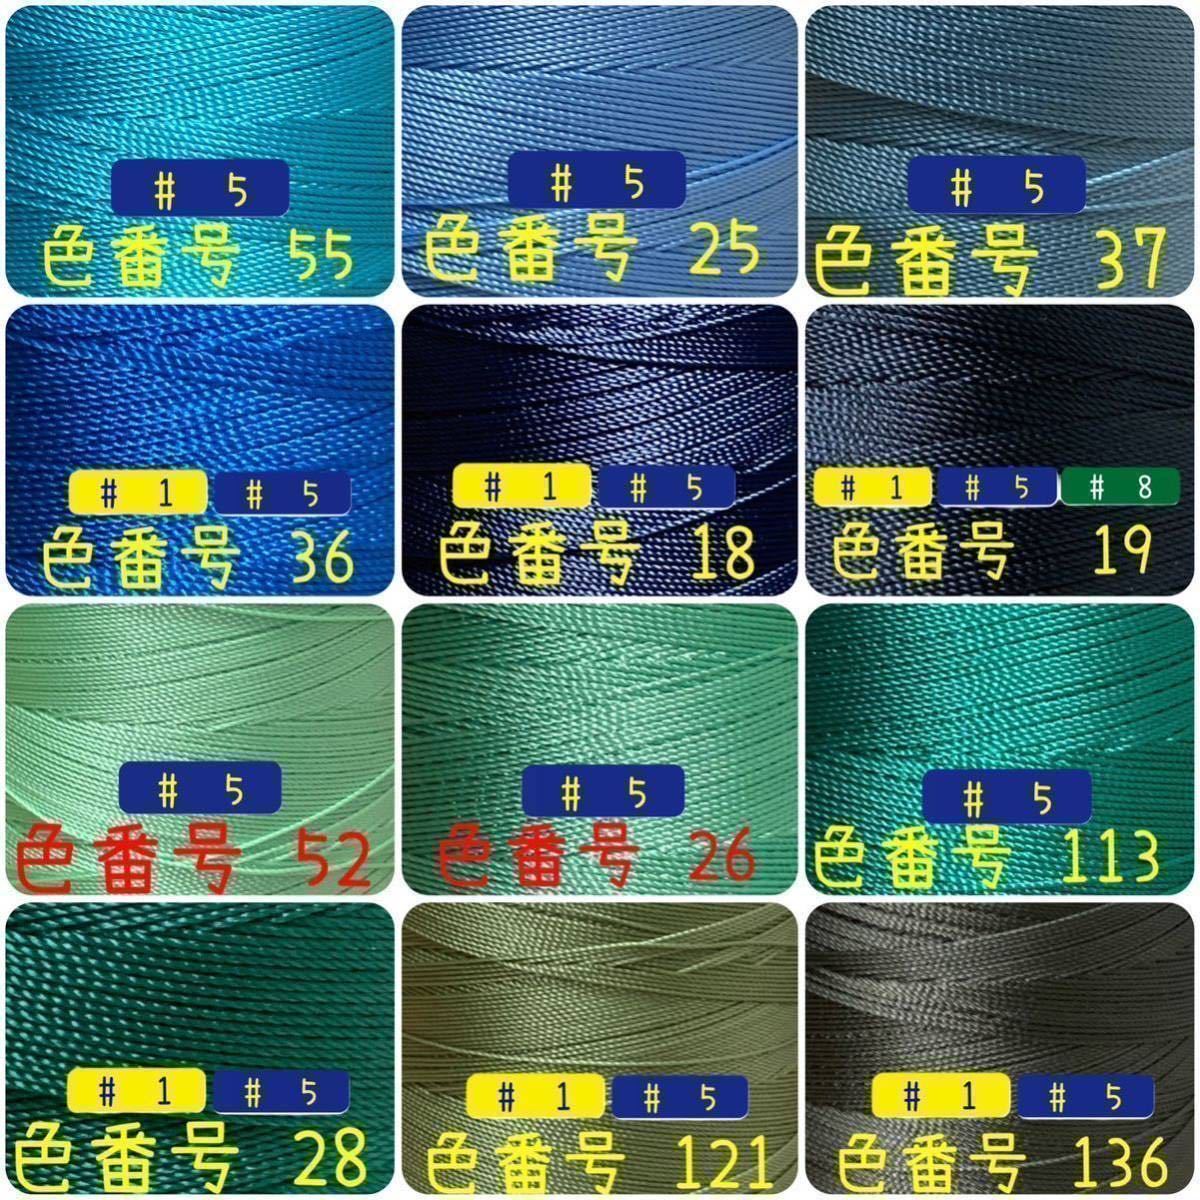 【10点匿名配送】ビニモMBT #1 #5 #8 レザークラフト手縫い糸_画像5